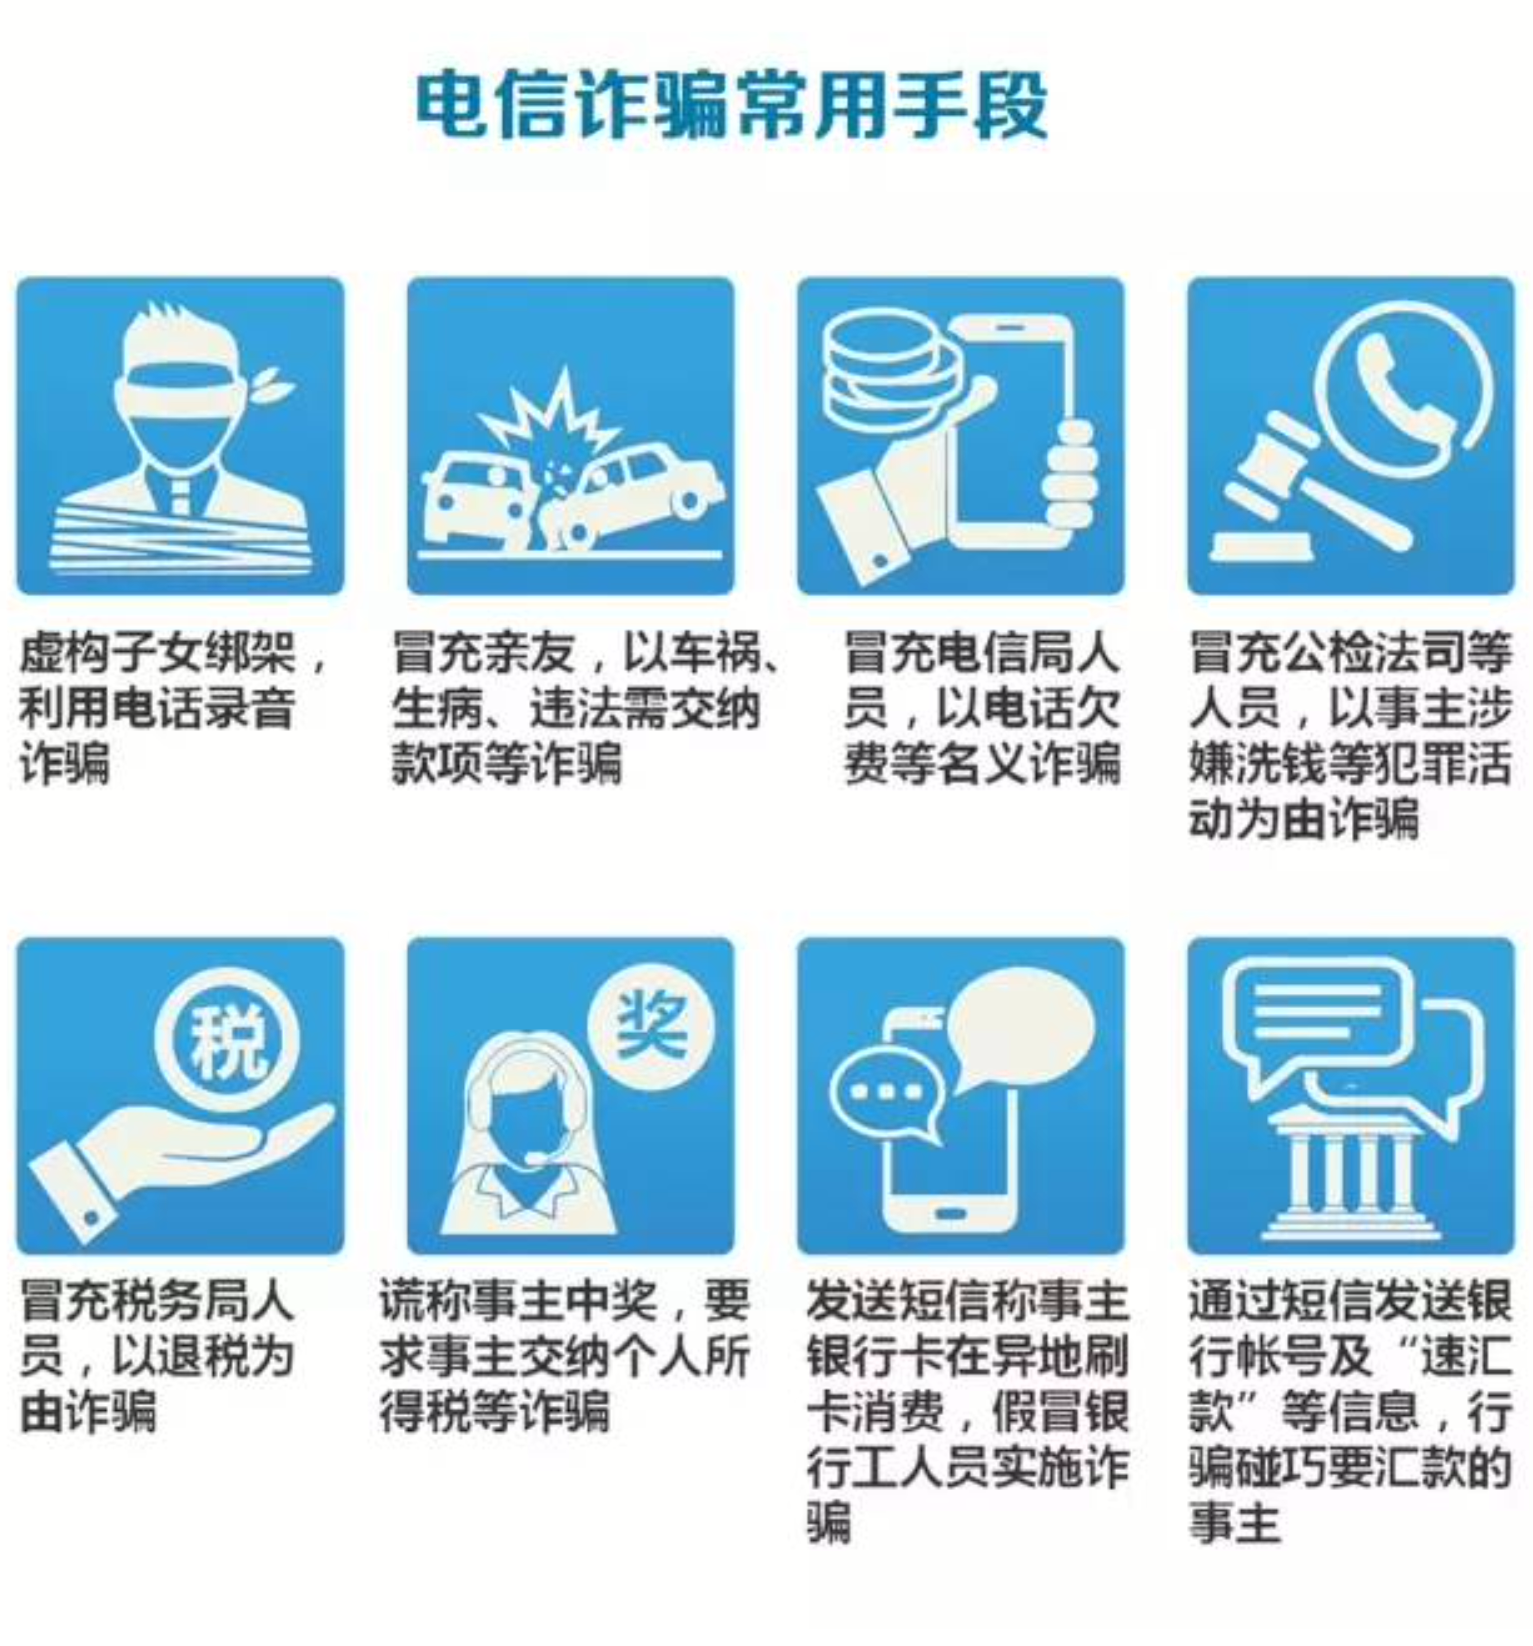 Staatsfernsehen CCTV informiert über gängige Betrugsmaschen, um das Bewusstsein der Bürger zu schärfen. Screenshot von CCTV.